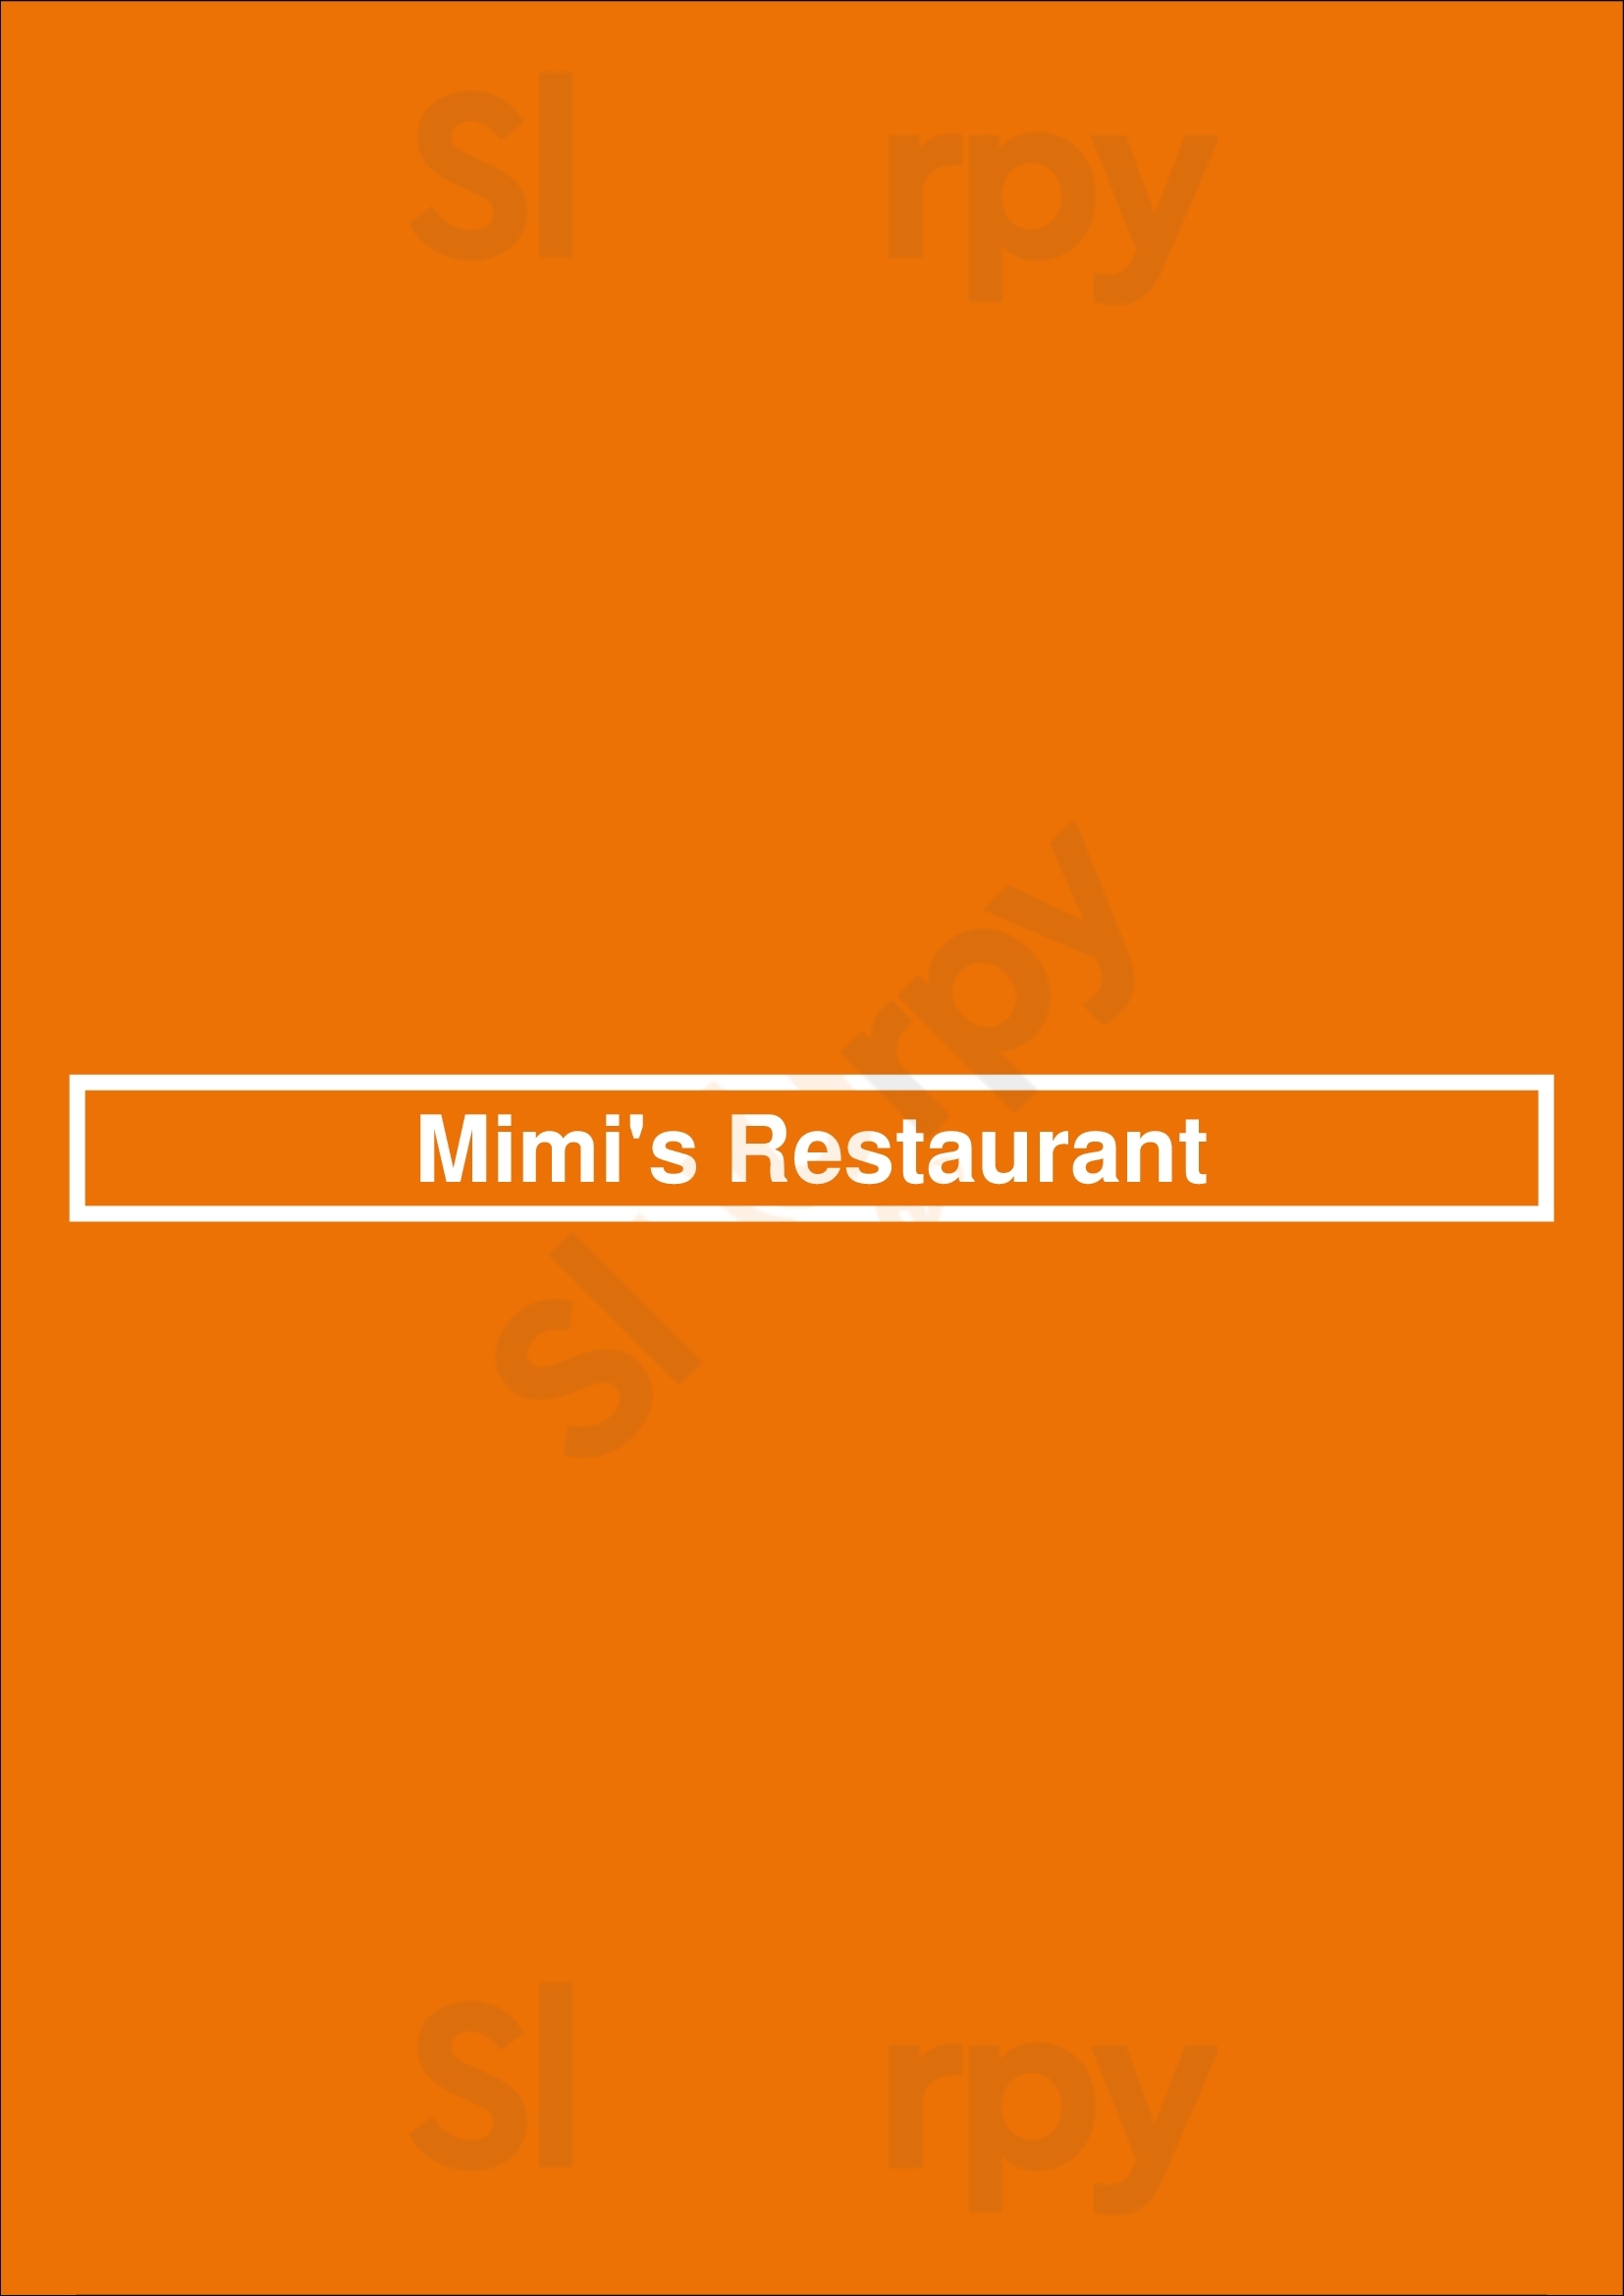 Mimi's Restaurant Camberwell Menu - 1